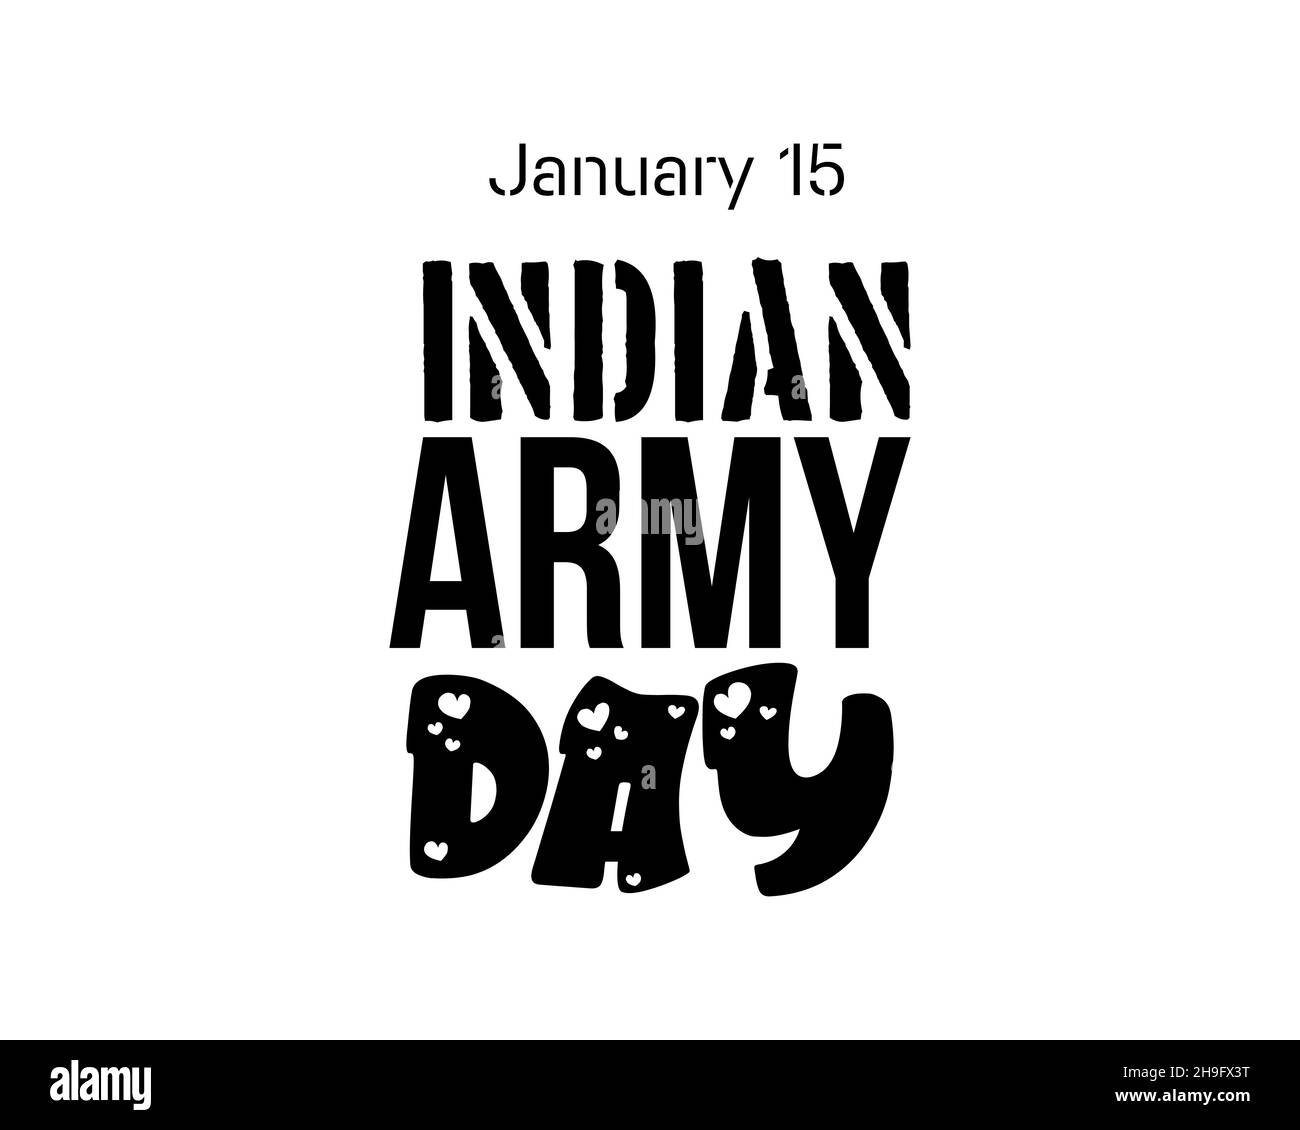 Januar 15 - Indian Army Day. Handschriftendesign zum Indian Army Day in schwarz mit weißem Hintergrund. Design für Banner, Poster, T-Shirt, Karte. Stock Vektor